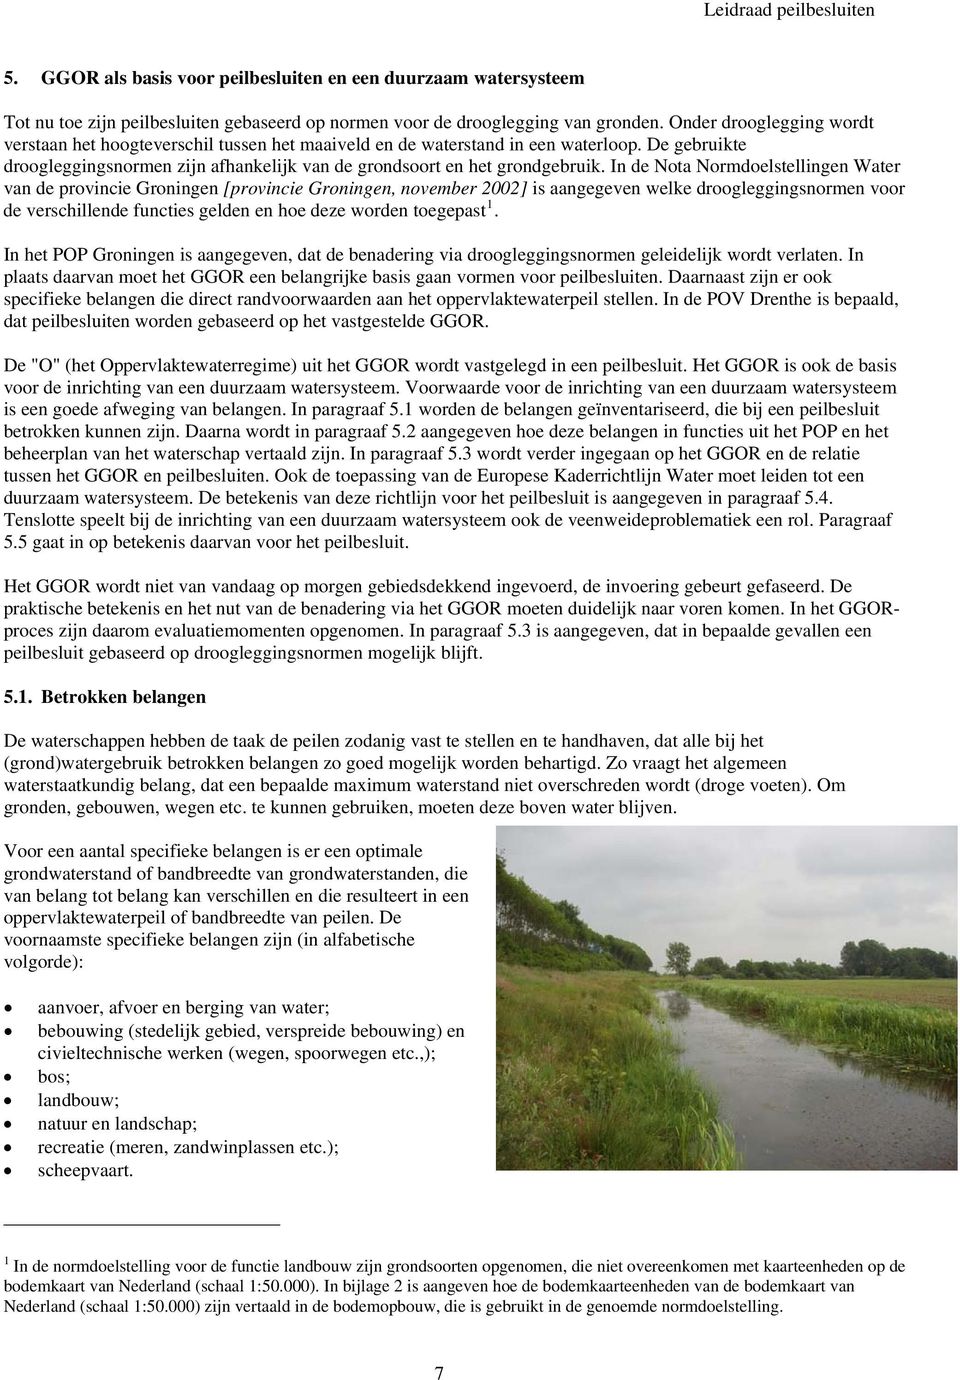 In de Nota Normdoelstellingen Water van de provincie Groningen [provincie Groningen, november 2002] is aangegeven welke droogleggingsnormen voor de verschillende functies gelden en hoe deze worden